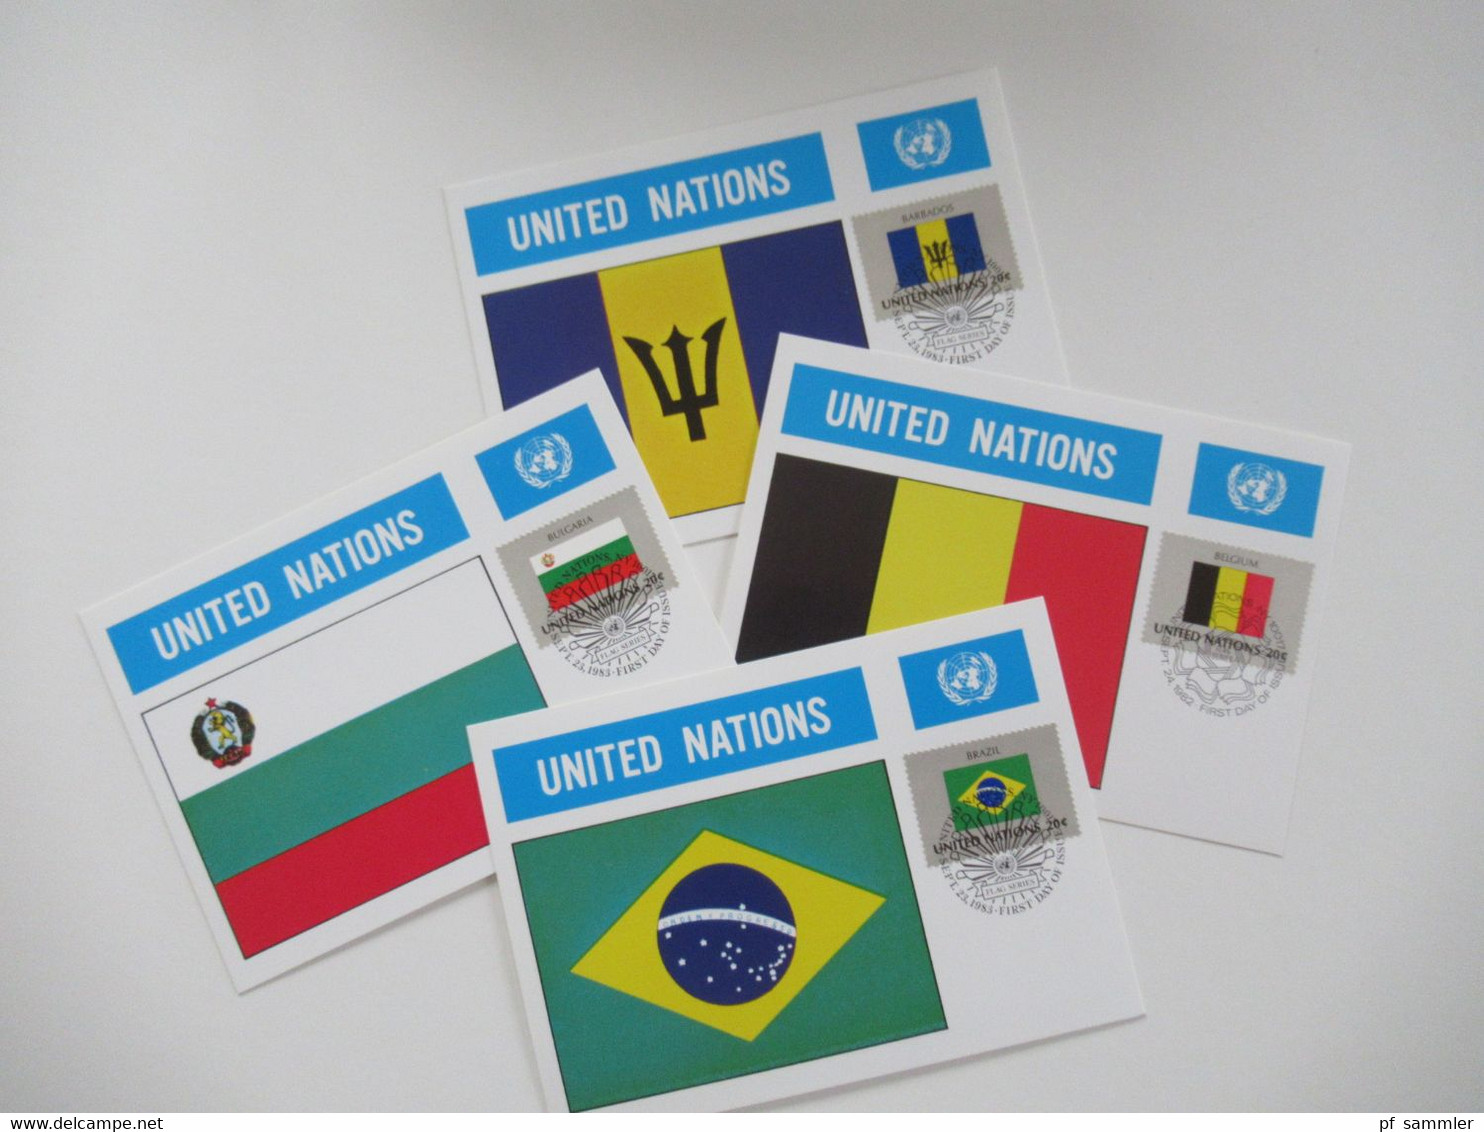 UN / UNO New York 1956 - 1984 Belege / FDC / Maximumkarten (MK) / Sonderbelege insgesamt 196 Stück! in 2 Briefalben